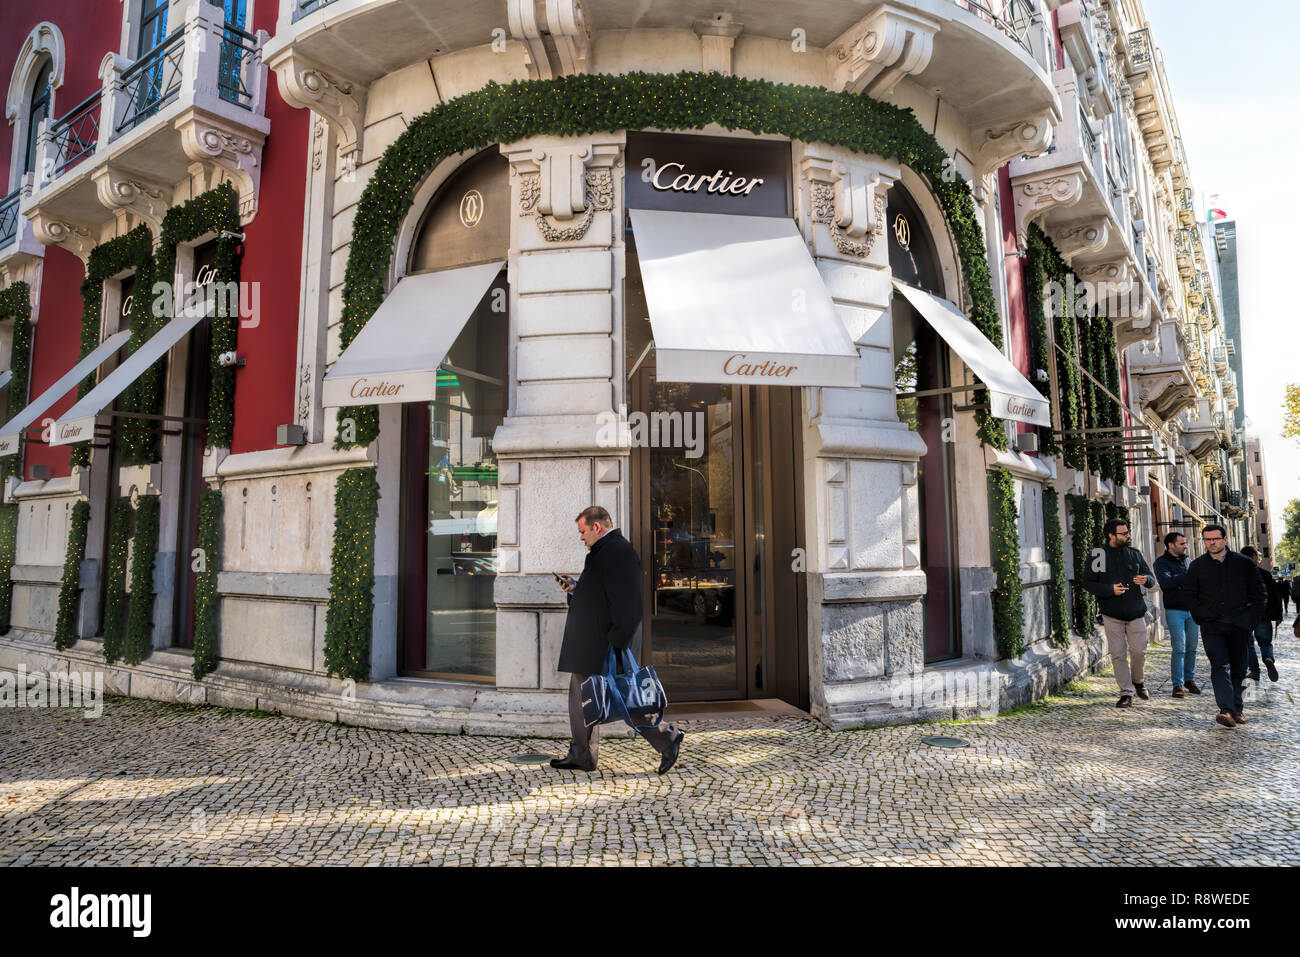 cartier boutique portugal